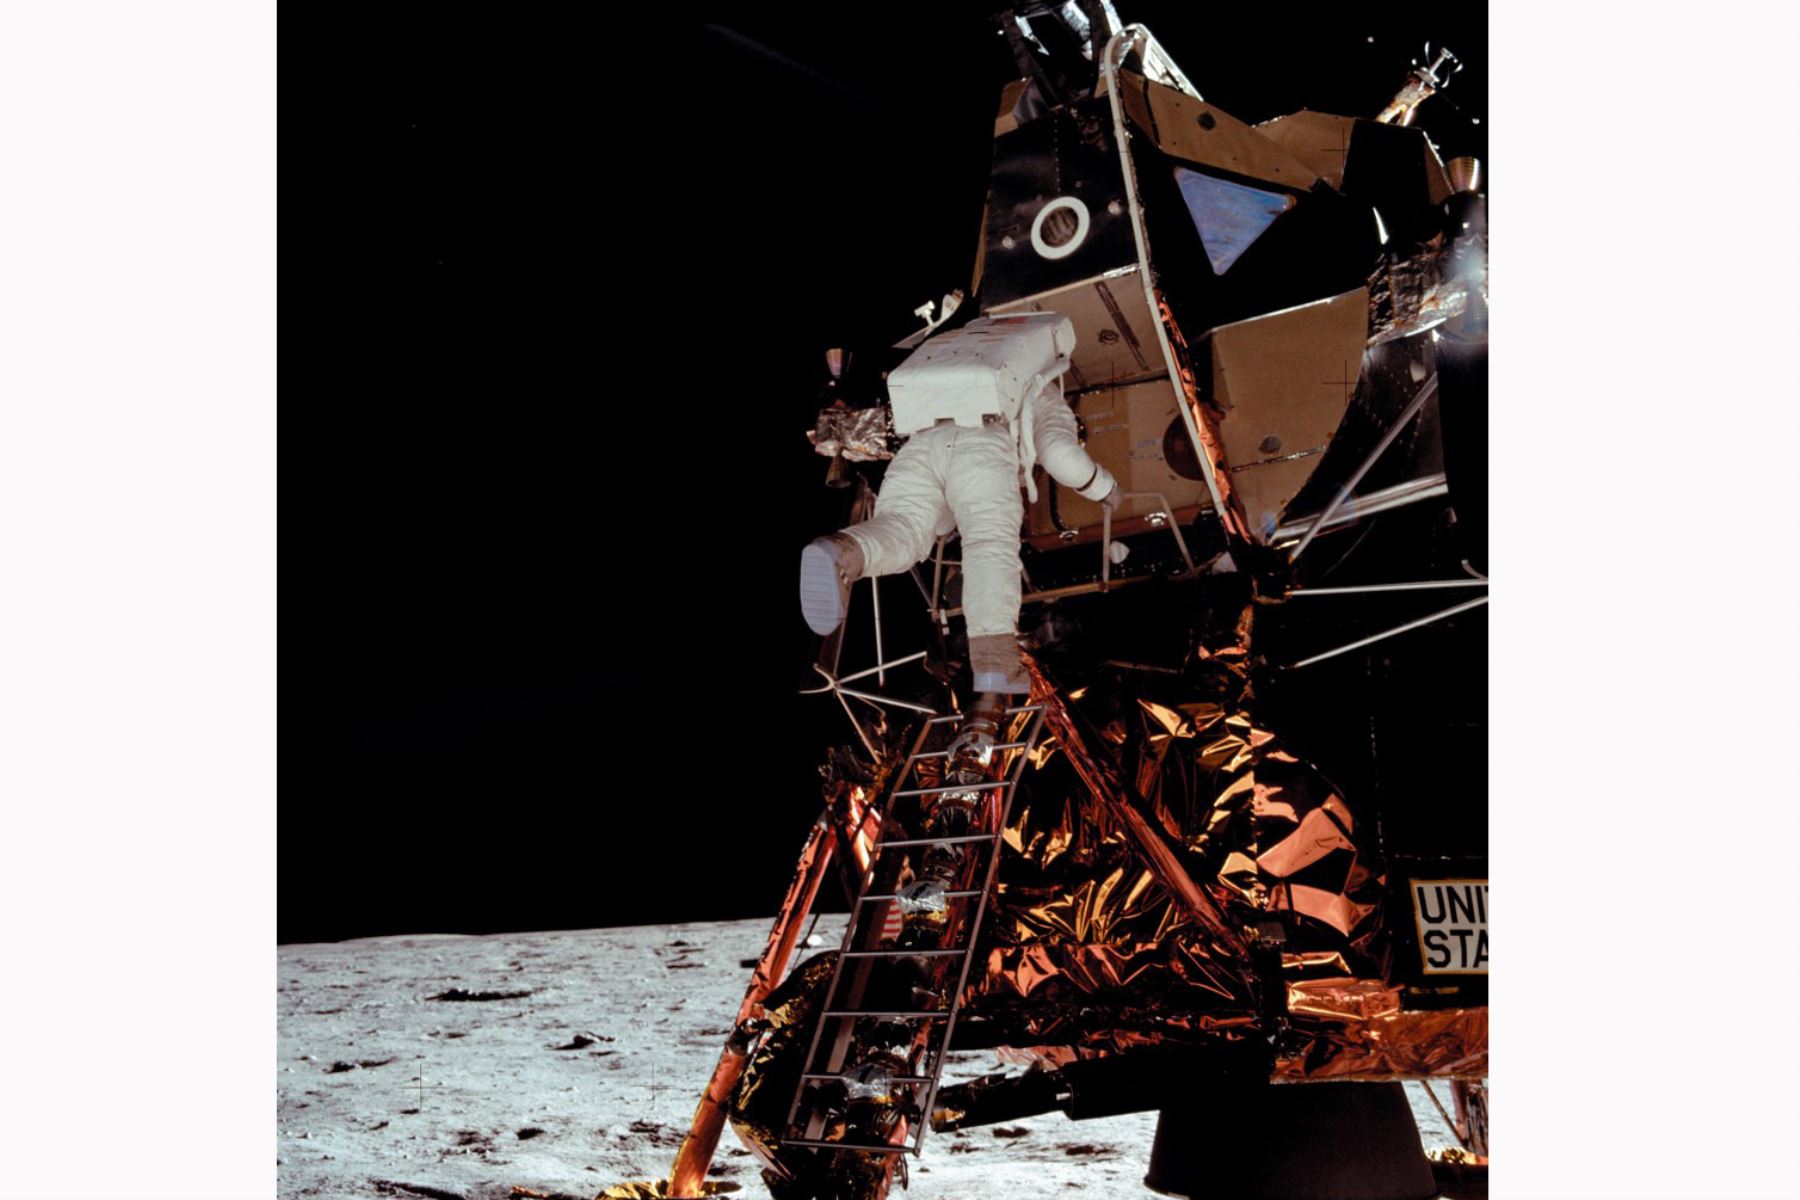 El astronauta estadounidense Buzz Aldrin baja por la escalera del módulo lunar "Eagle" 15 minutos después que Neil Armstrong el 21 de julio de 1969. Los dos astronautas de la misión Apolo 11 son los primeros hombres en la historia en caminar sobre la superficie lunar. Foto de la NASA / AFP